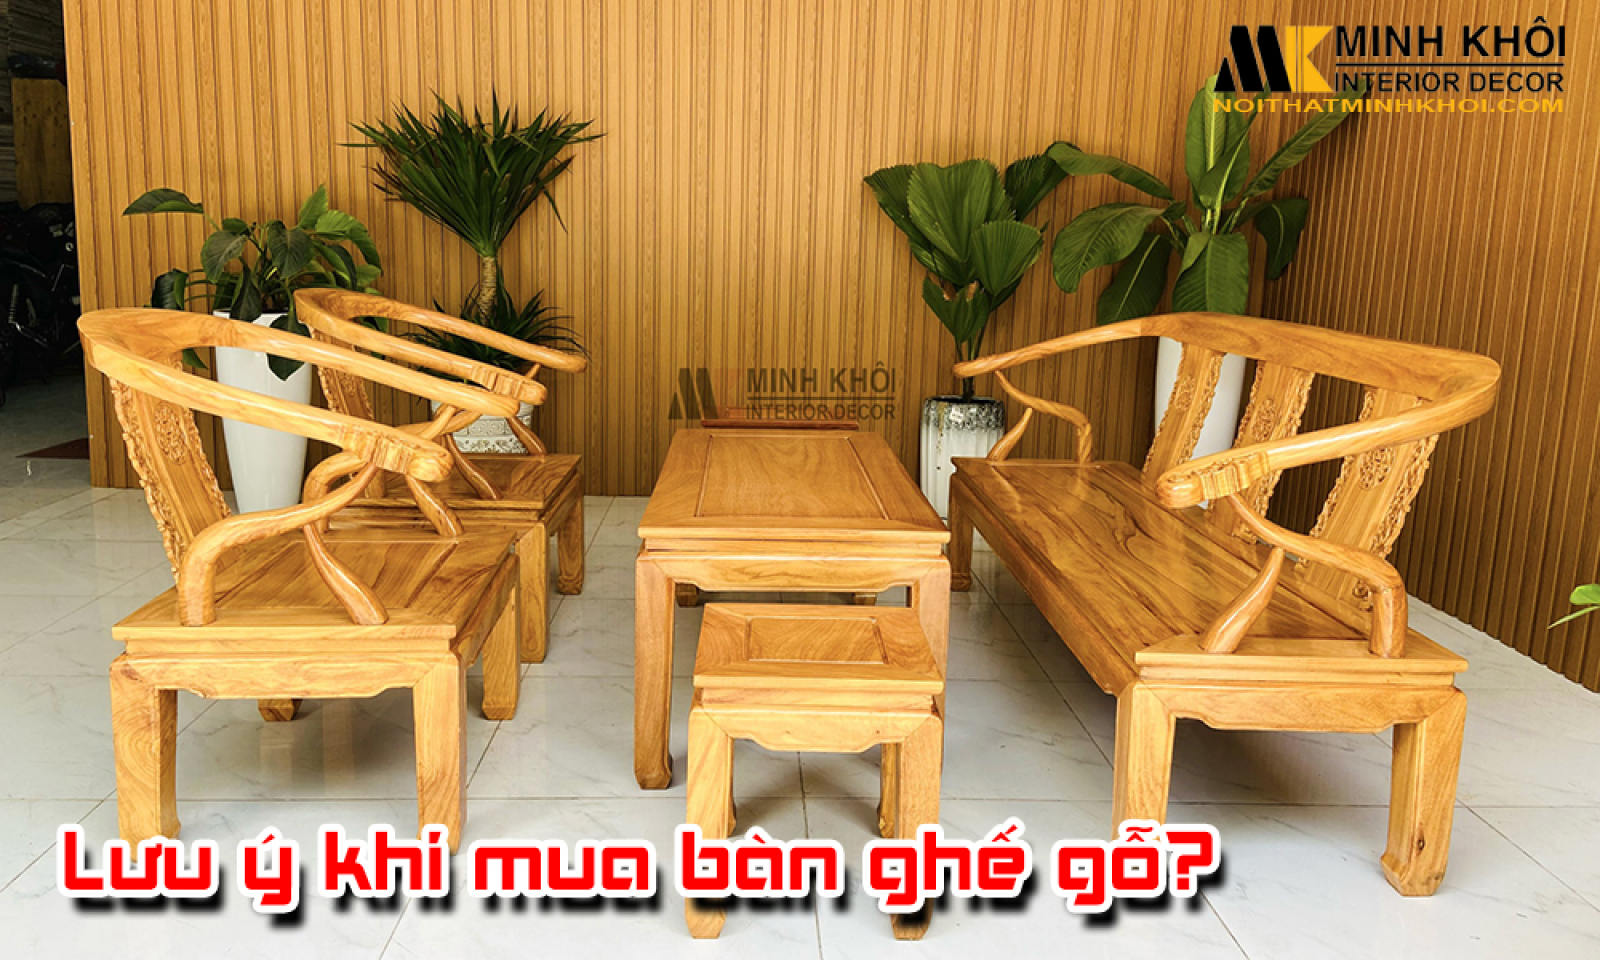 Những lưu ý khi mua bàn ghế gỗ phòng khách mà bạn nên biết?